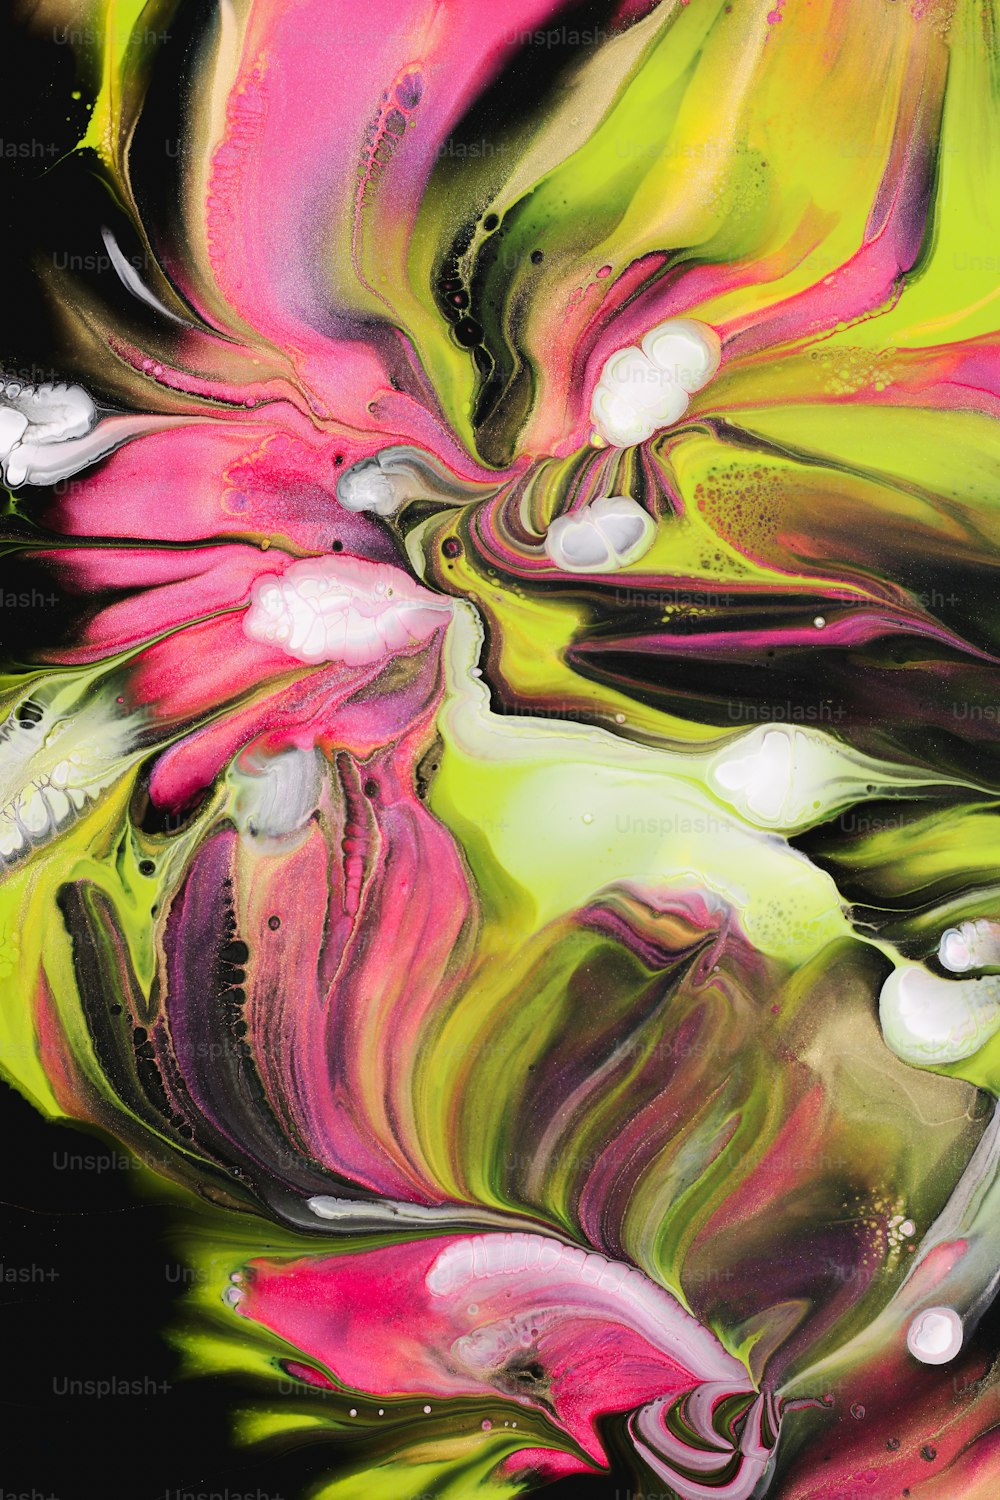 une peinture abstraite de fleurs roses, vertes et blanches